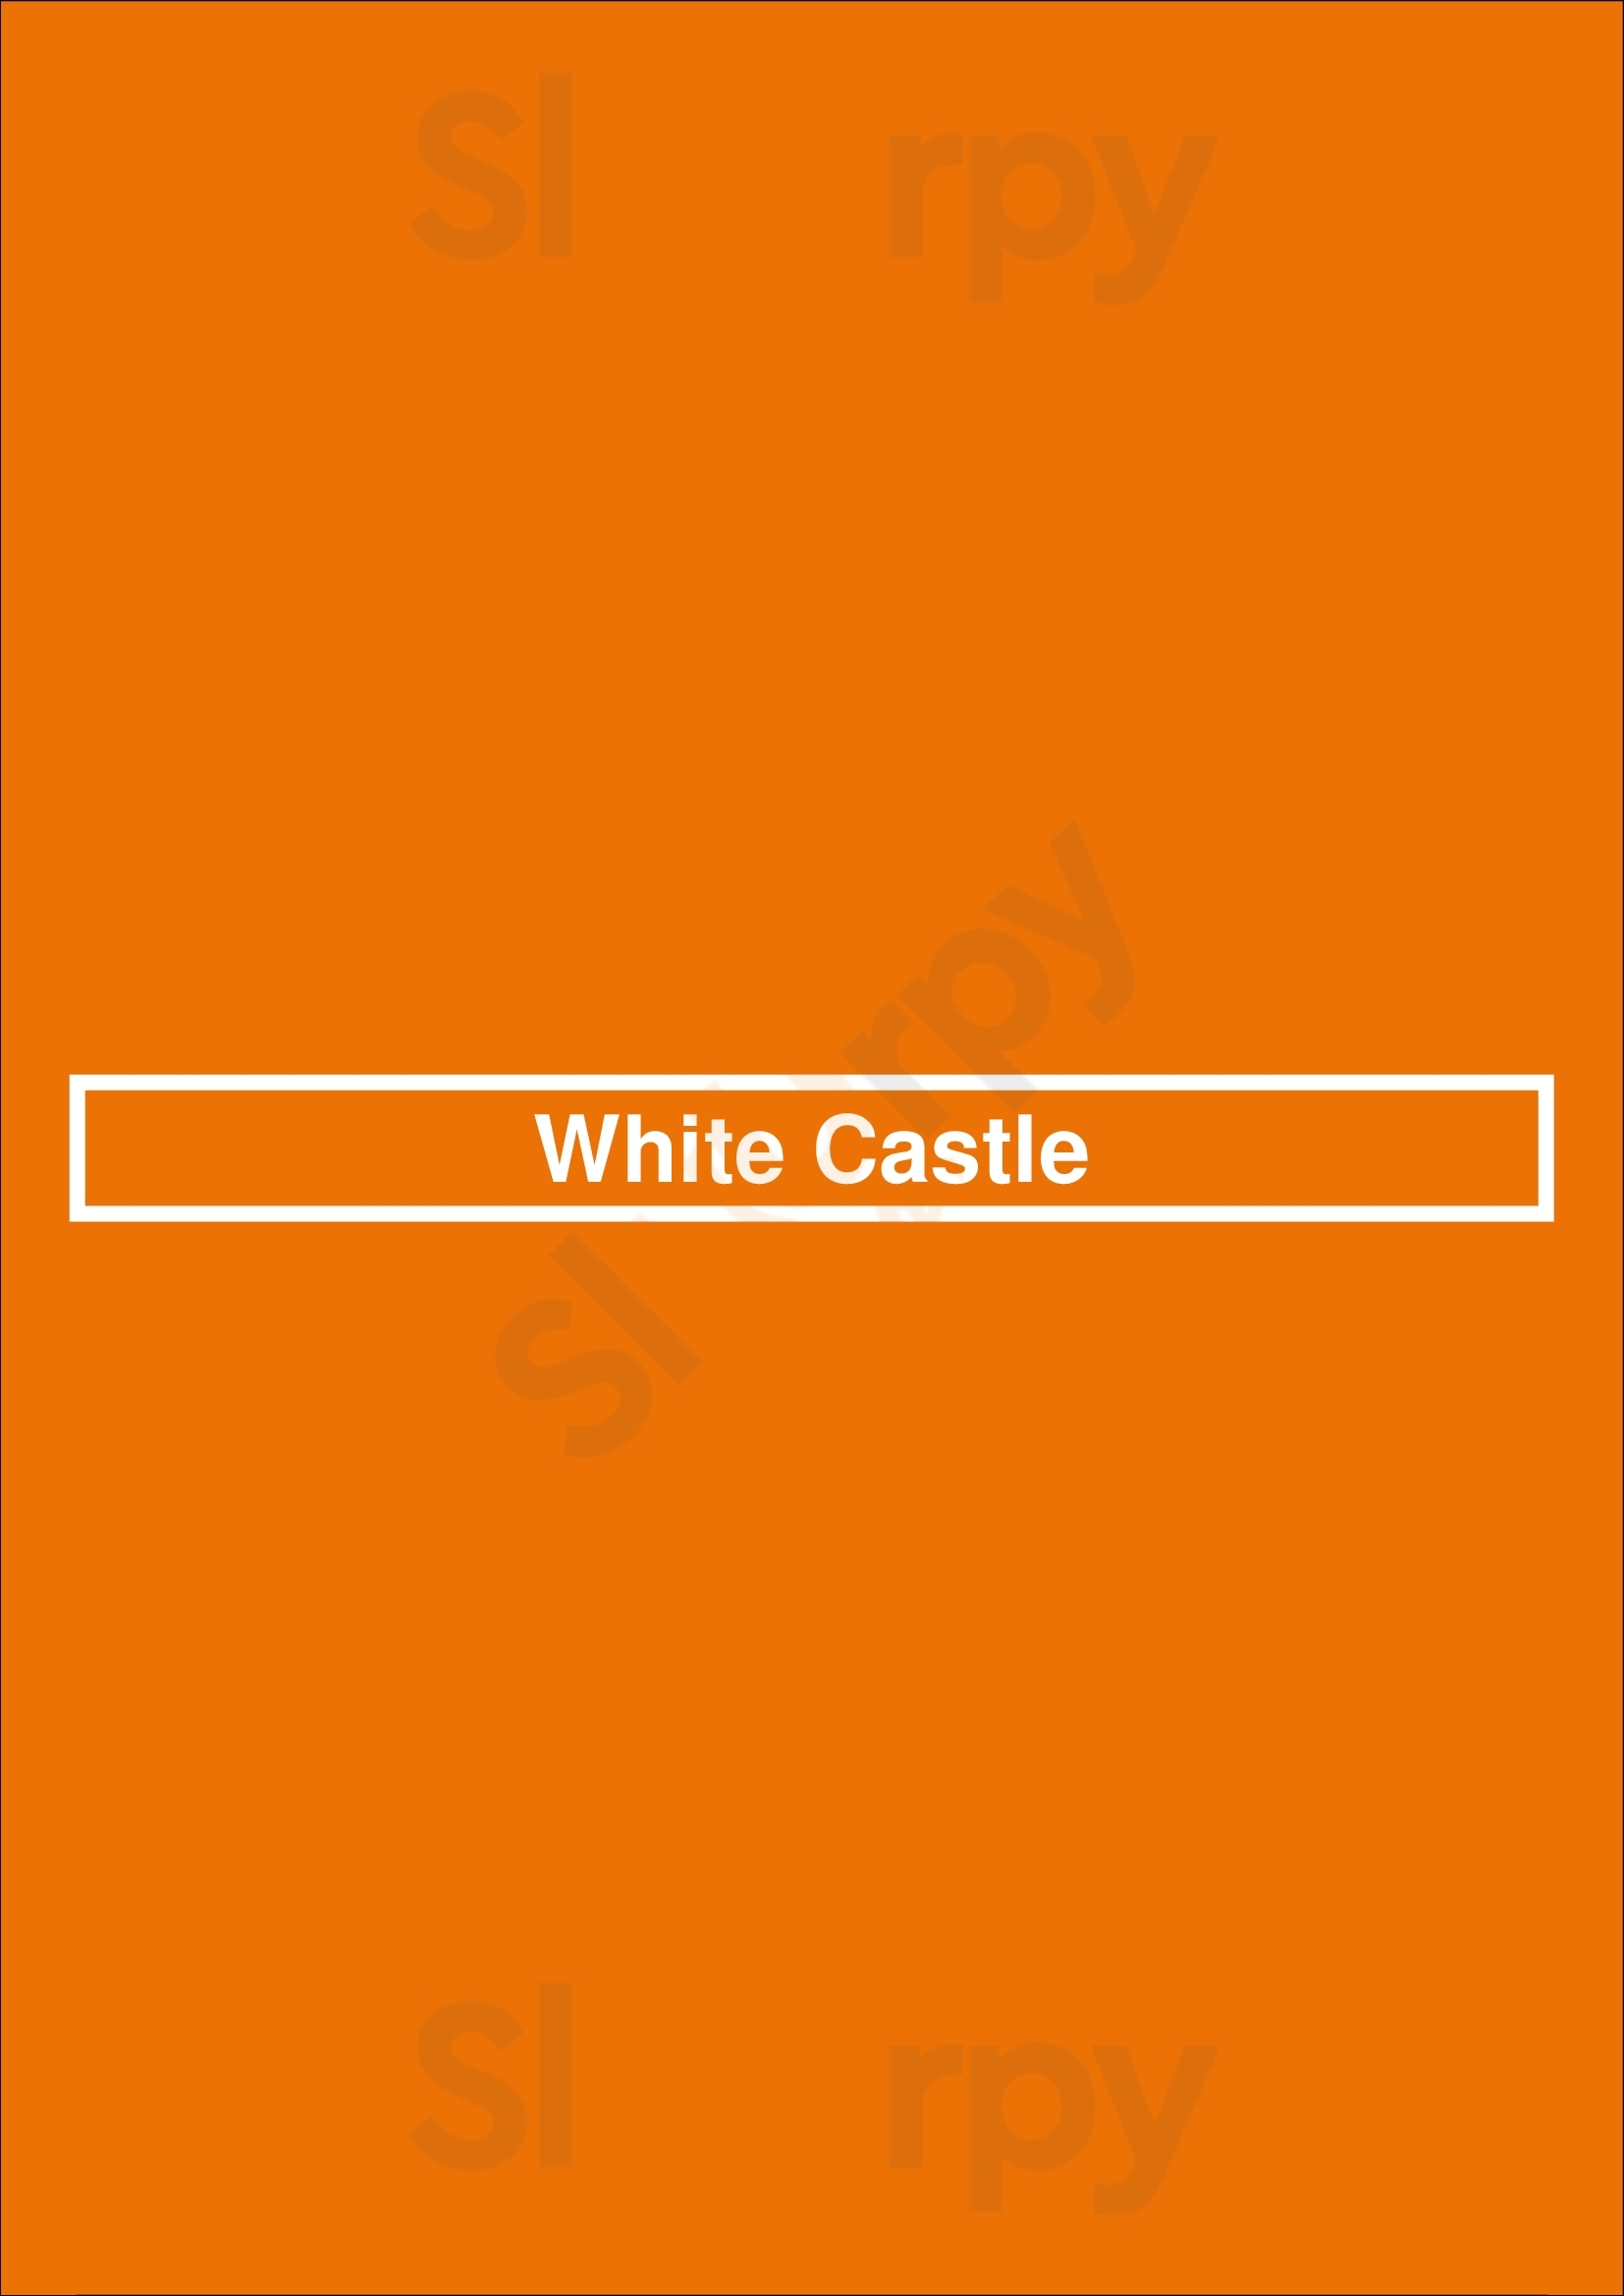 White Castle Cincinnati Menu - 1